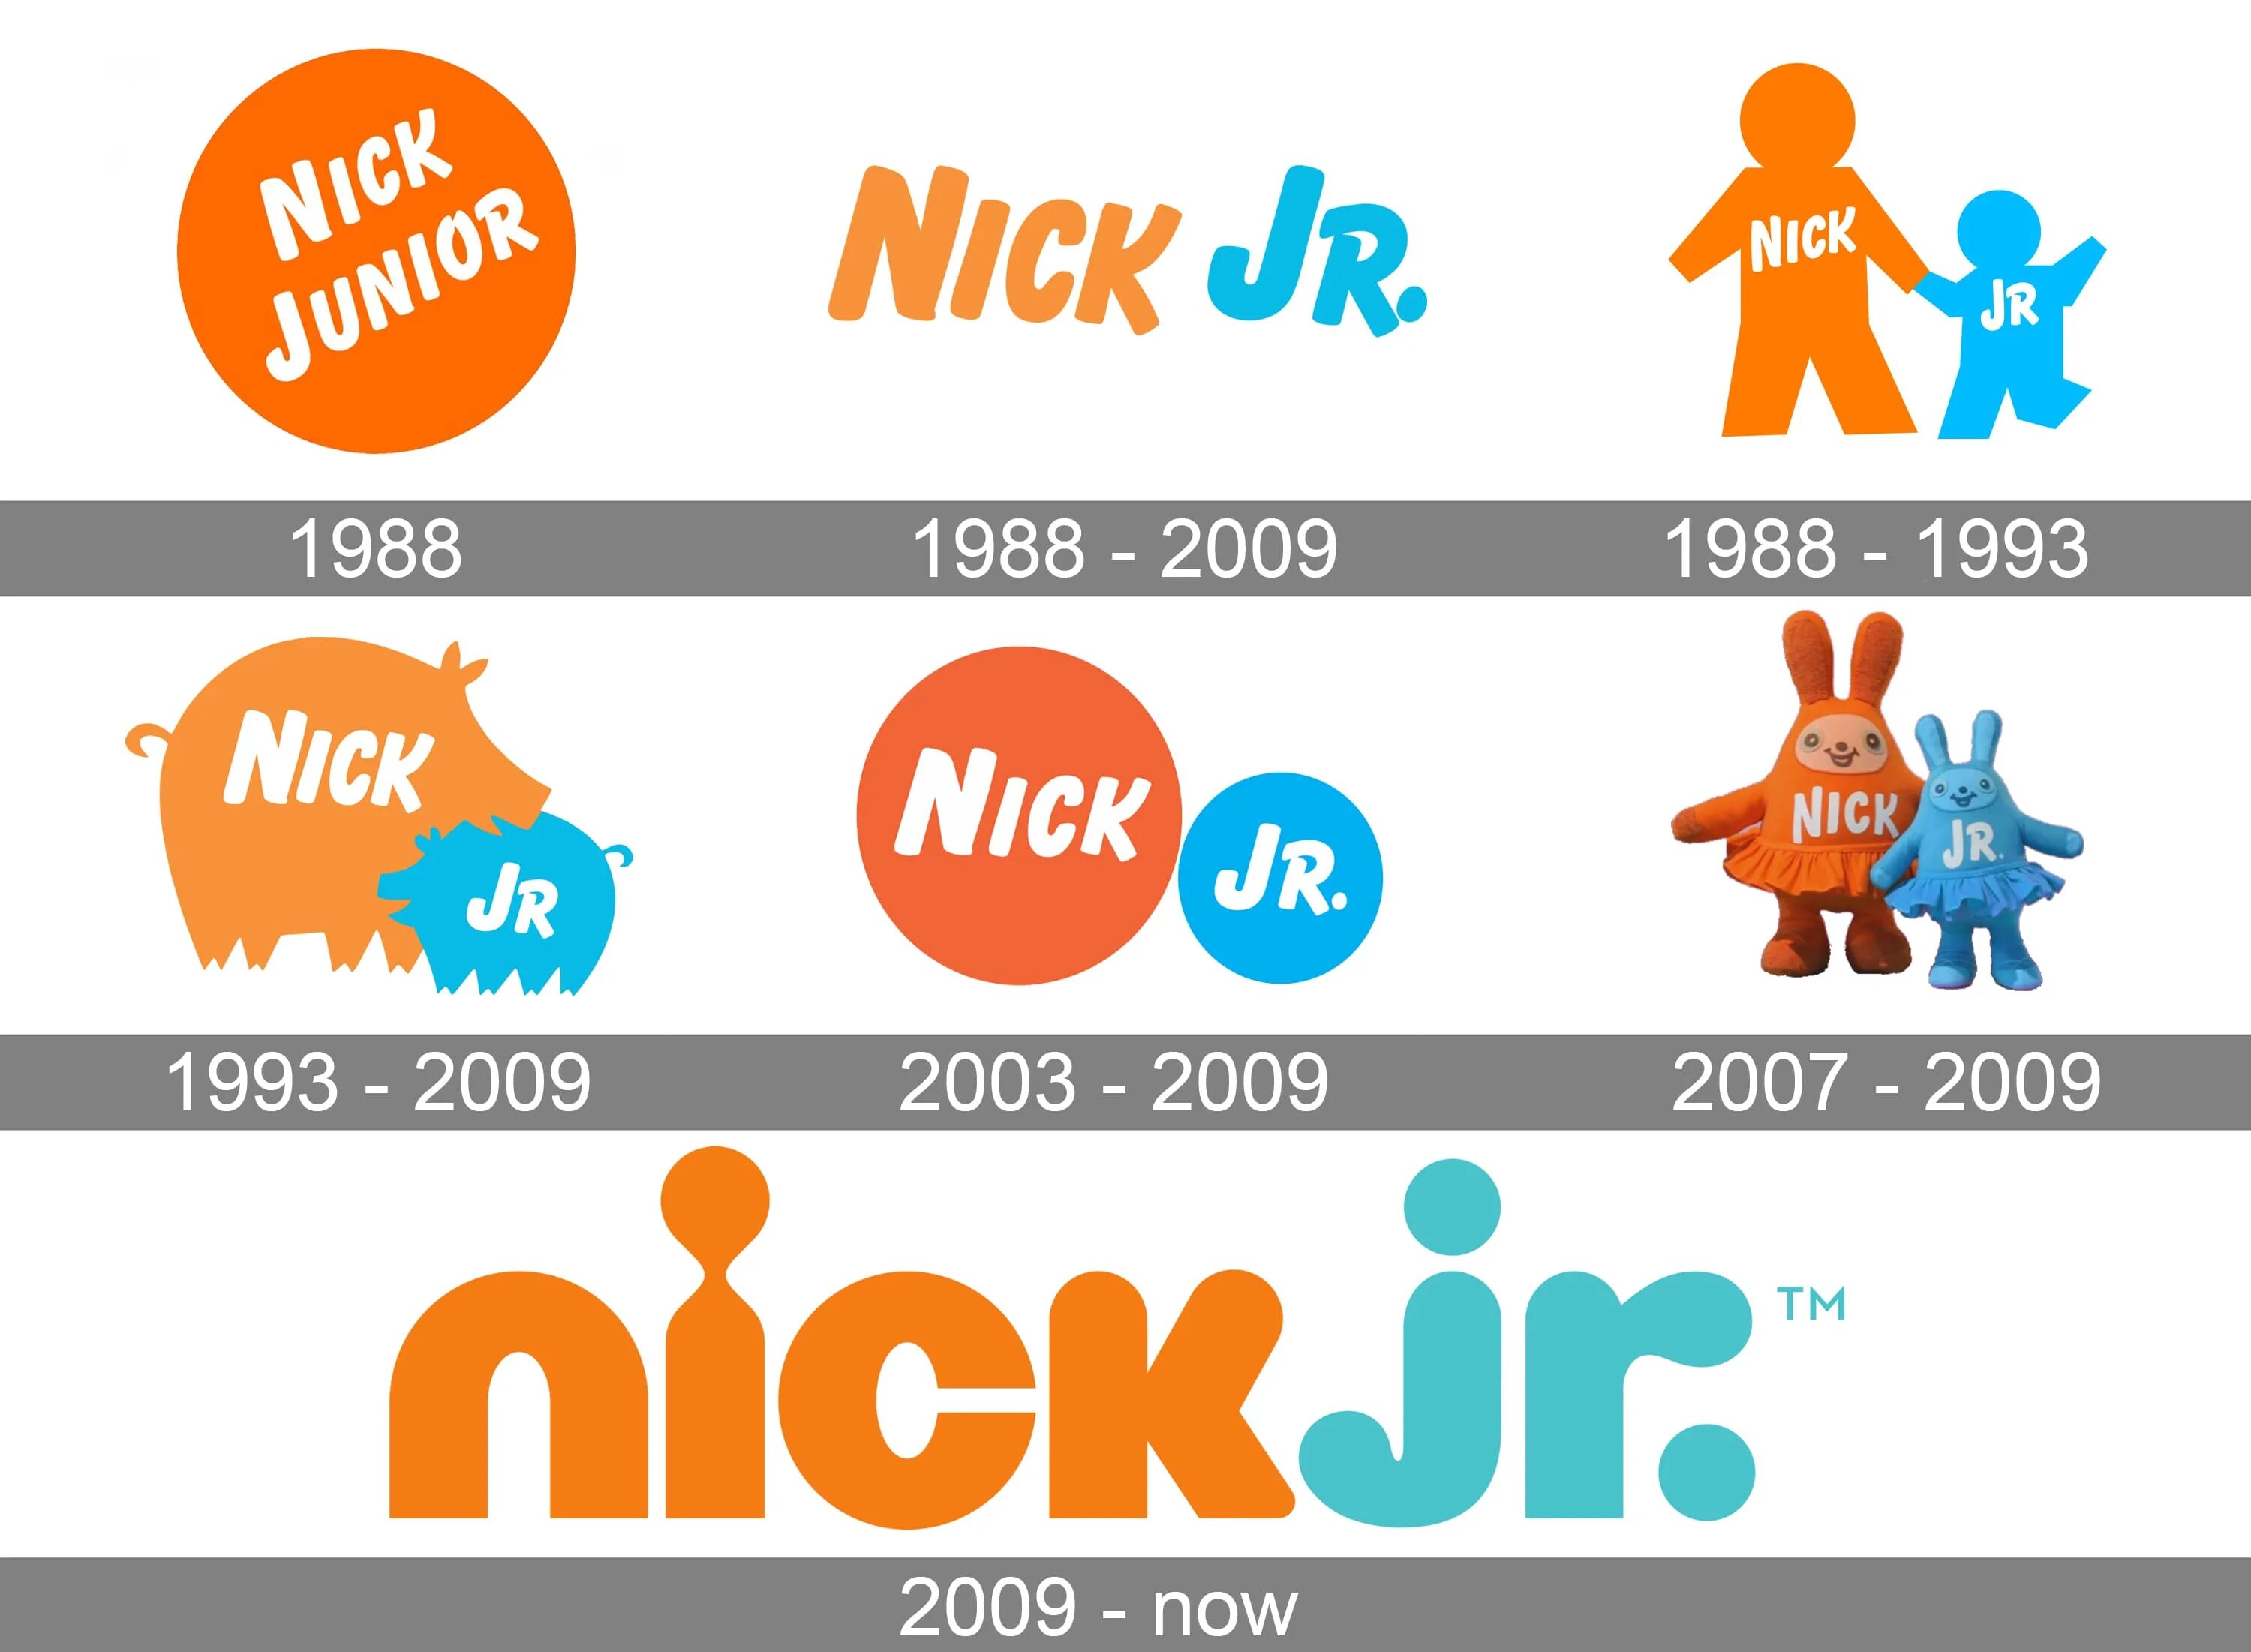 Nick jr россия. Nick Jr. Nick Jr логотип. Nick Jr logo History. Ник Джуниор ник Джуниор.